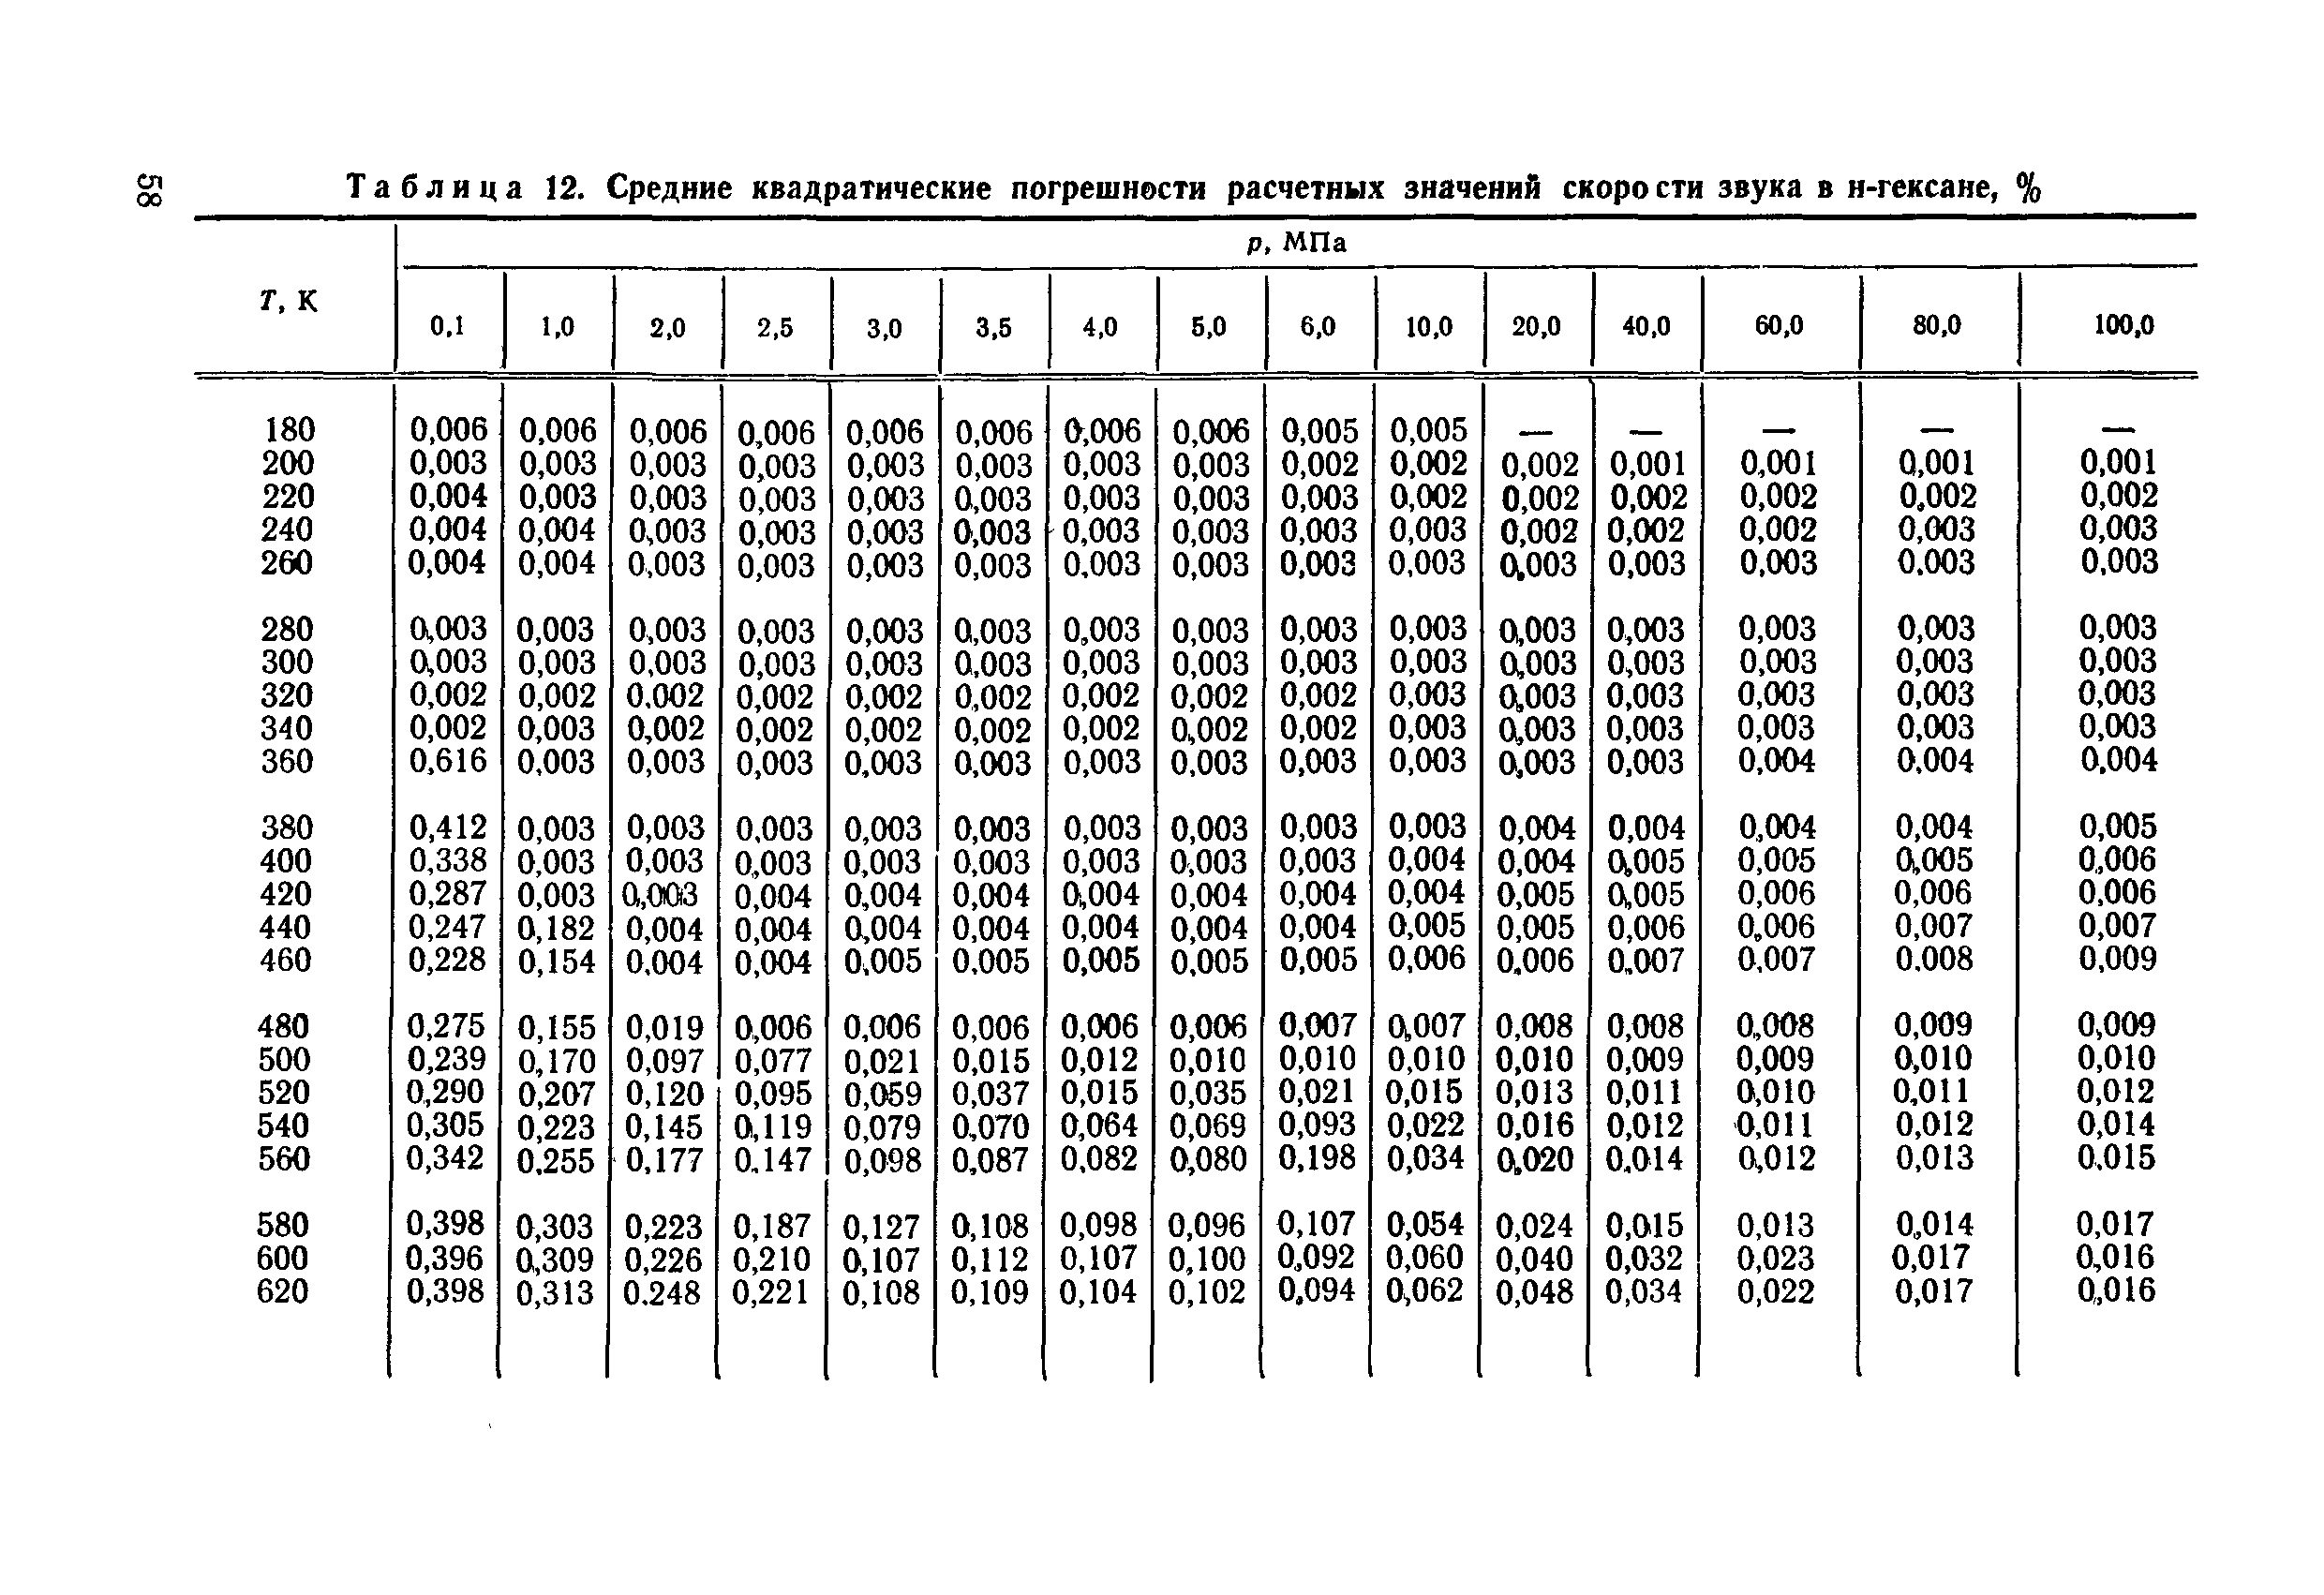 18 17 29 1. Плотность гексана. Плотность гексана таблица. Таблица ГСССД 154-91. Теплоемкость гексана.